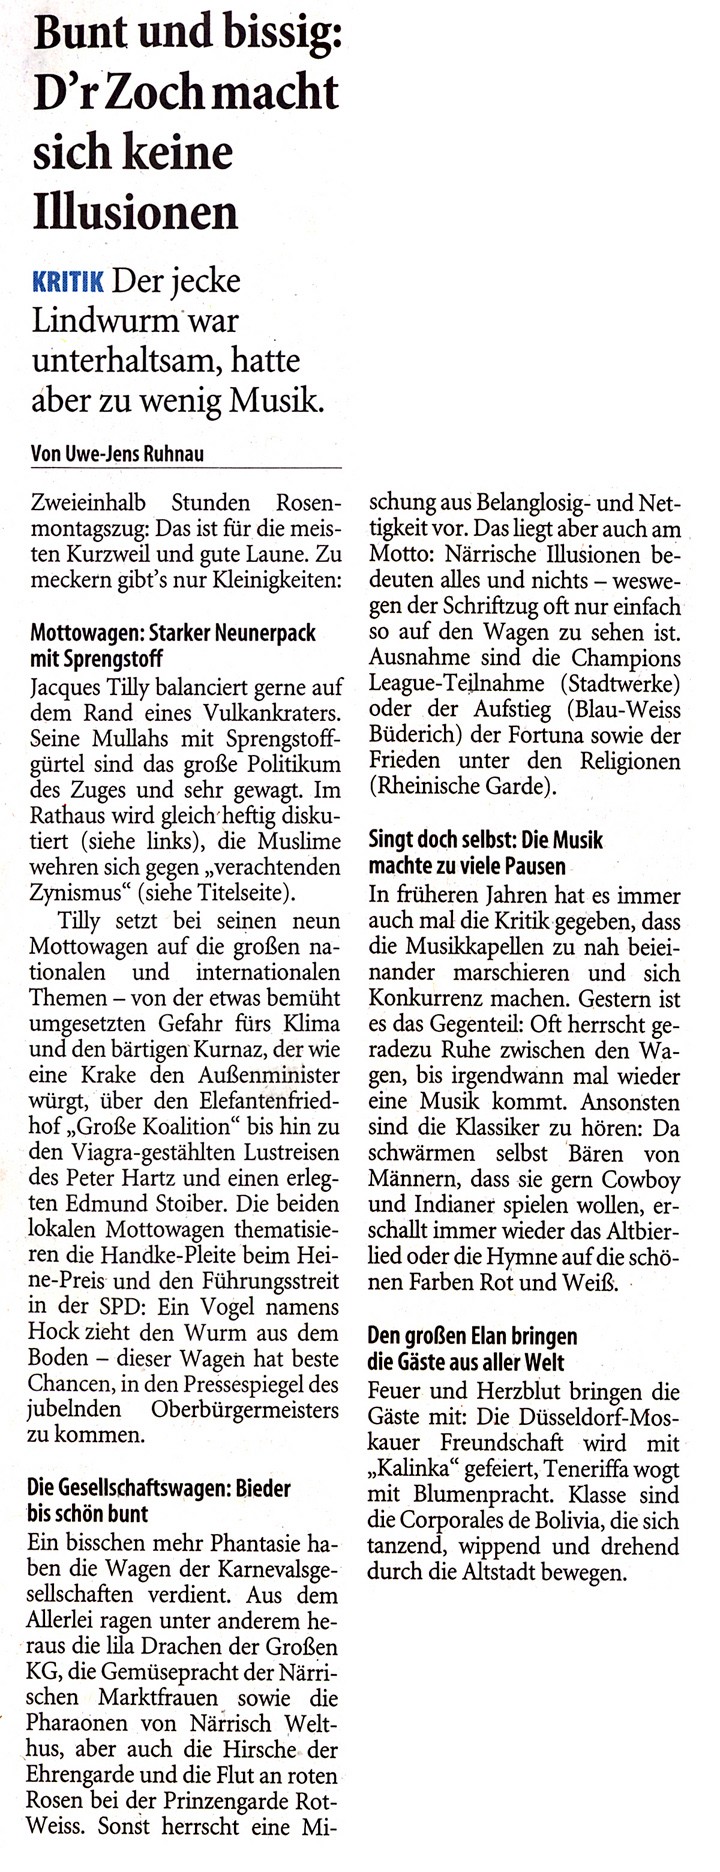 Westdeutsche Zeitung, 20.2.2007 Artikel im Wortlaut [/pressespiegel/2007/rosenmontag-2007/p-2007-02-20-wz-vulkankrater-txt/]